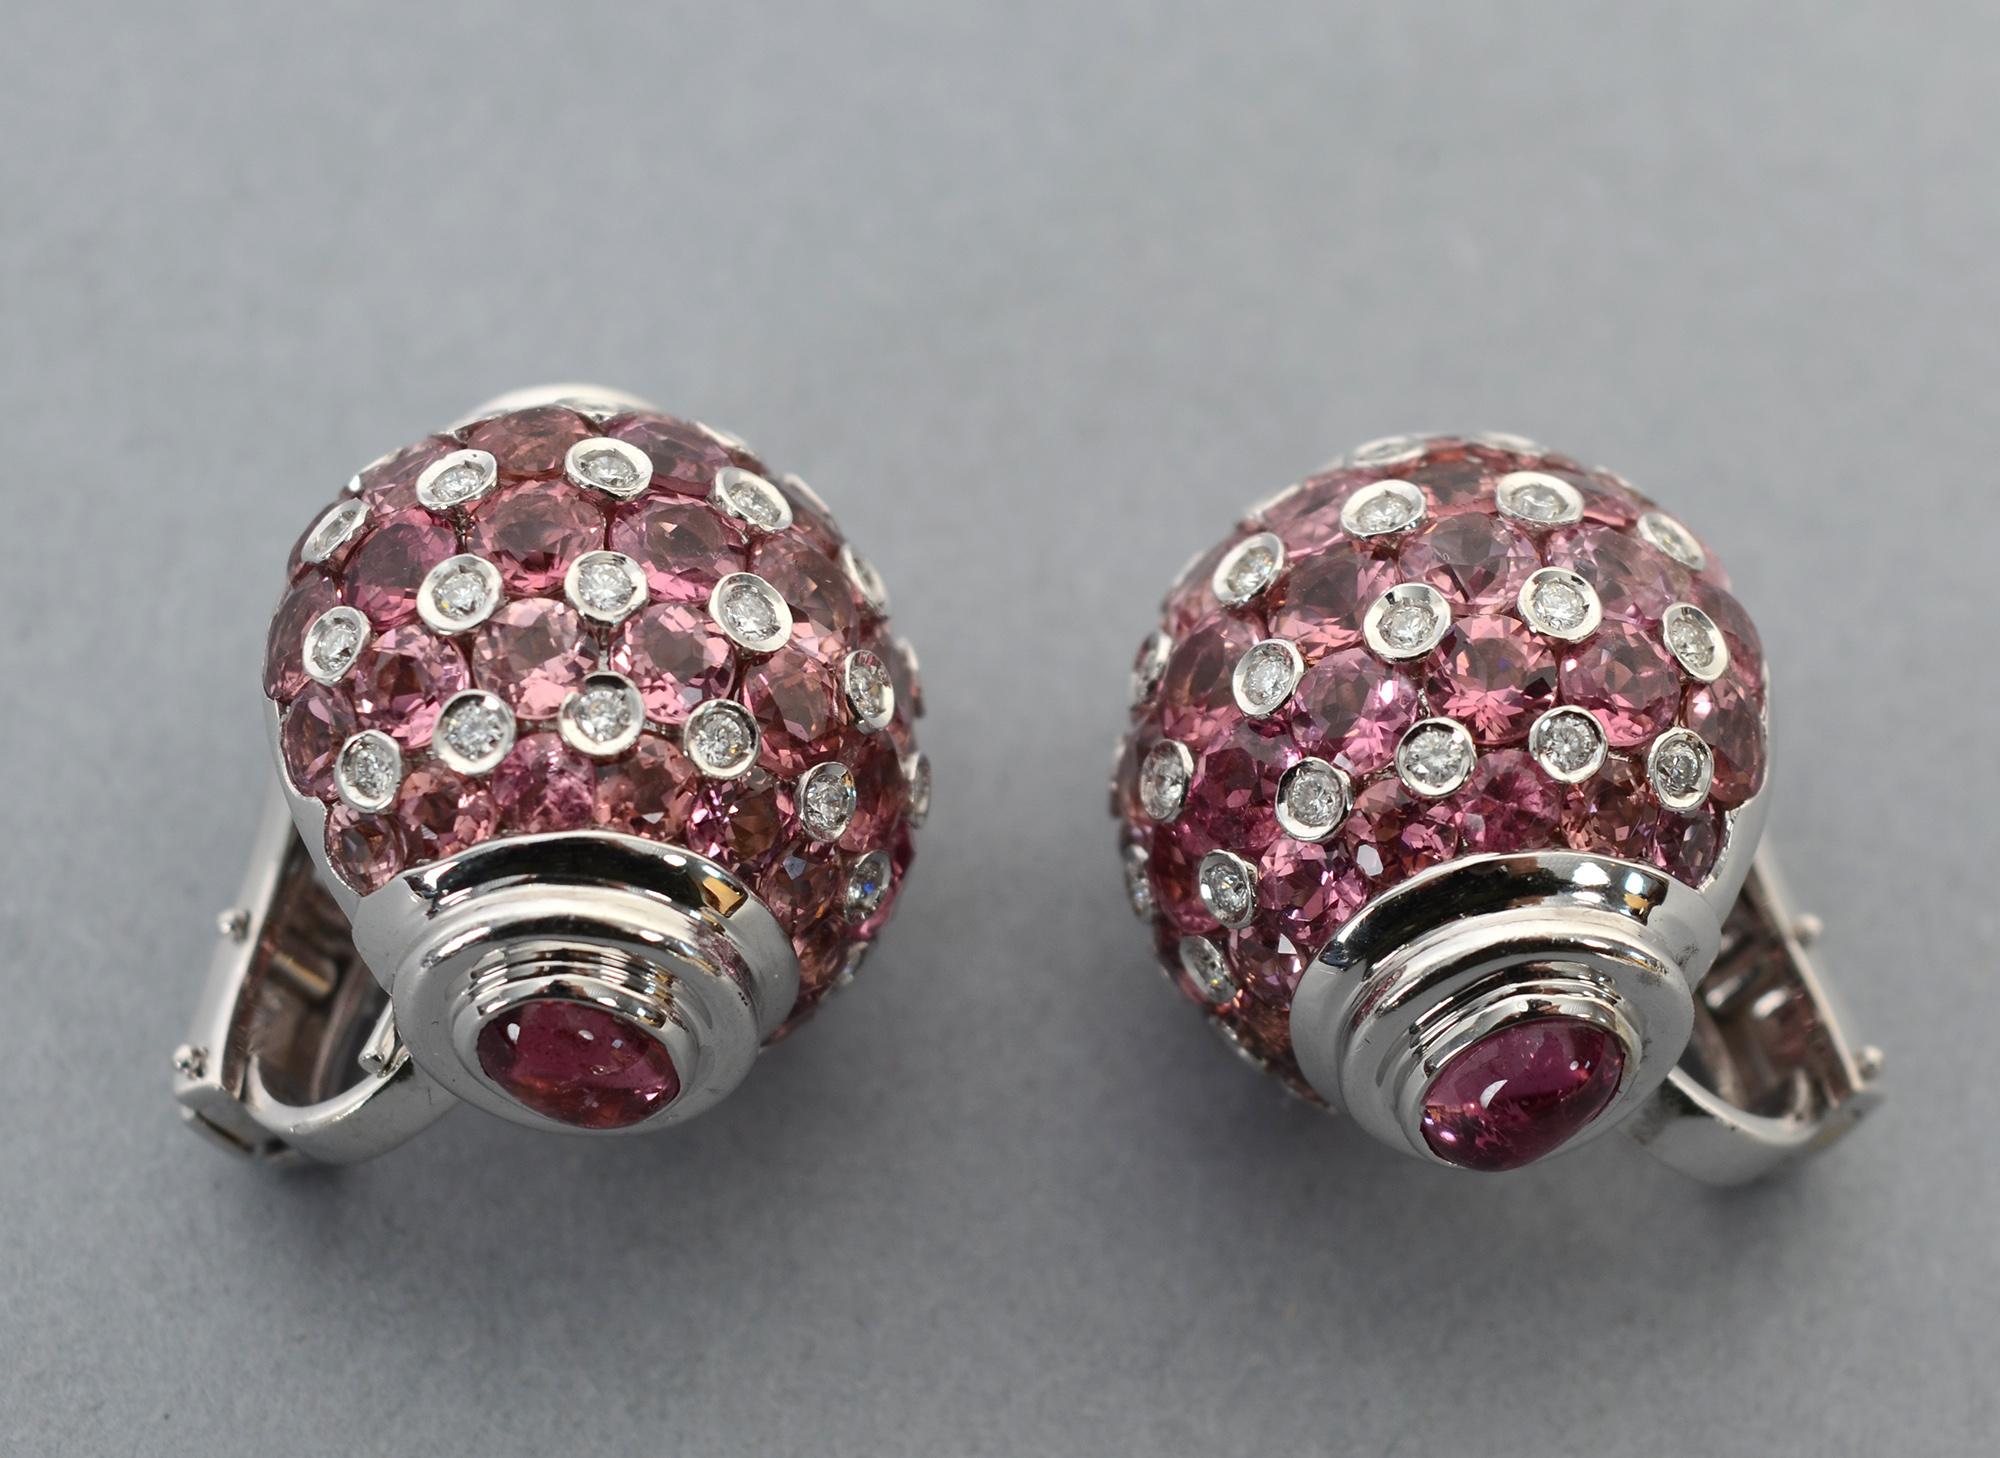 Auffällig, aber nicht zu auffällig - Ohrringe aus rosa Saphir, Turmalin und Diamant.
In den Ohrringen wechseln sich etwa 3 Karat Diamanten mit mehr als 6 Karat Turmalin ab. Der obere und untere Teil sind ovale rosa Saphire. Alle sind in Weißgold